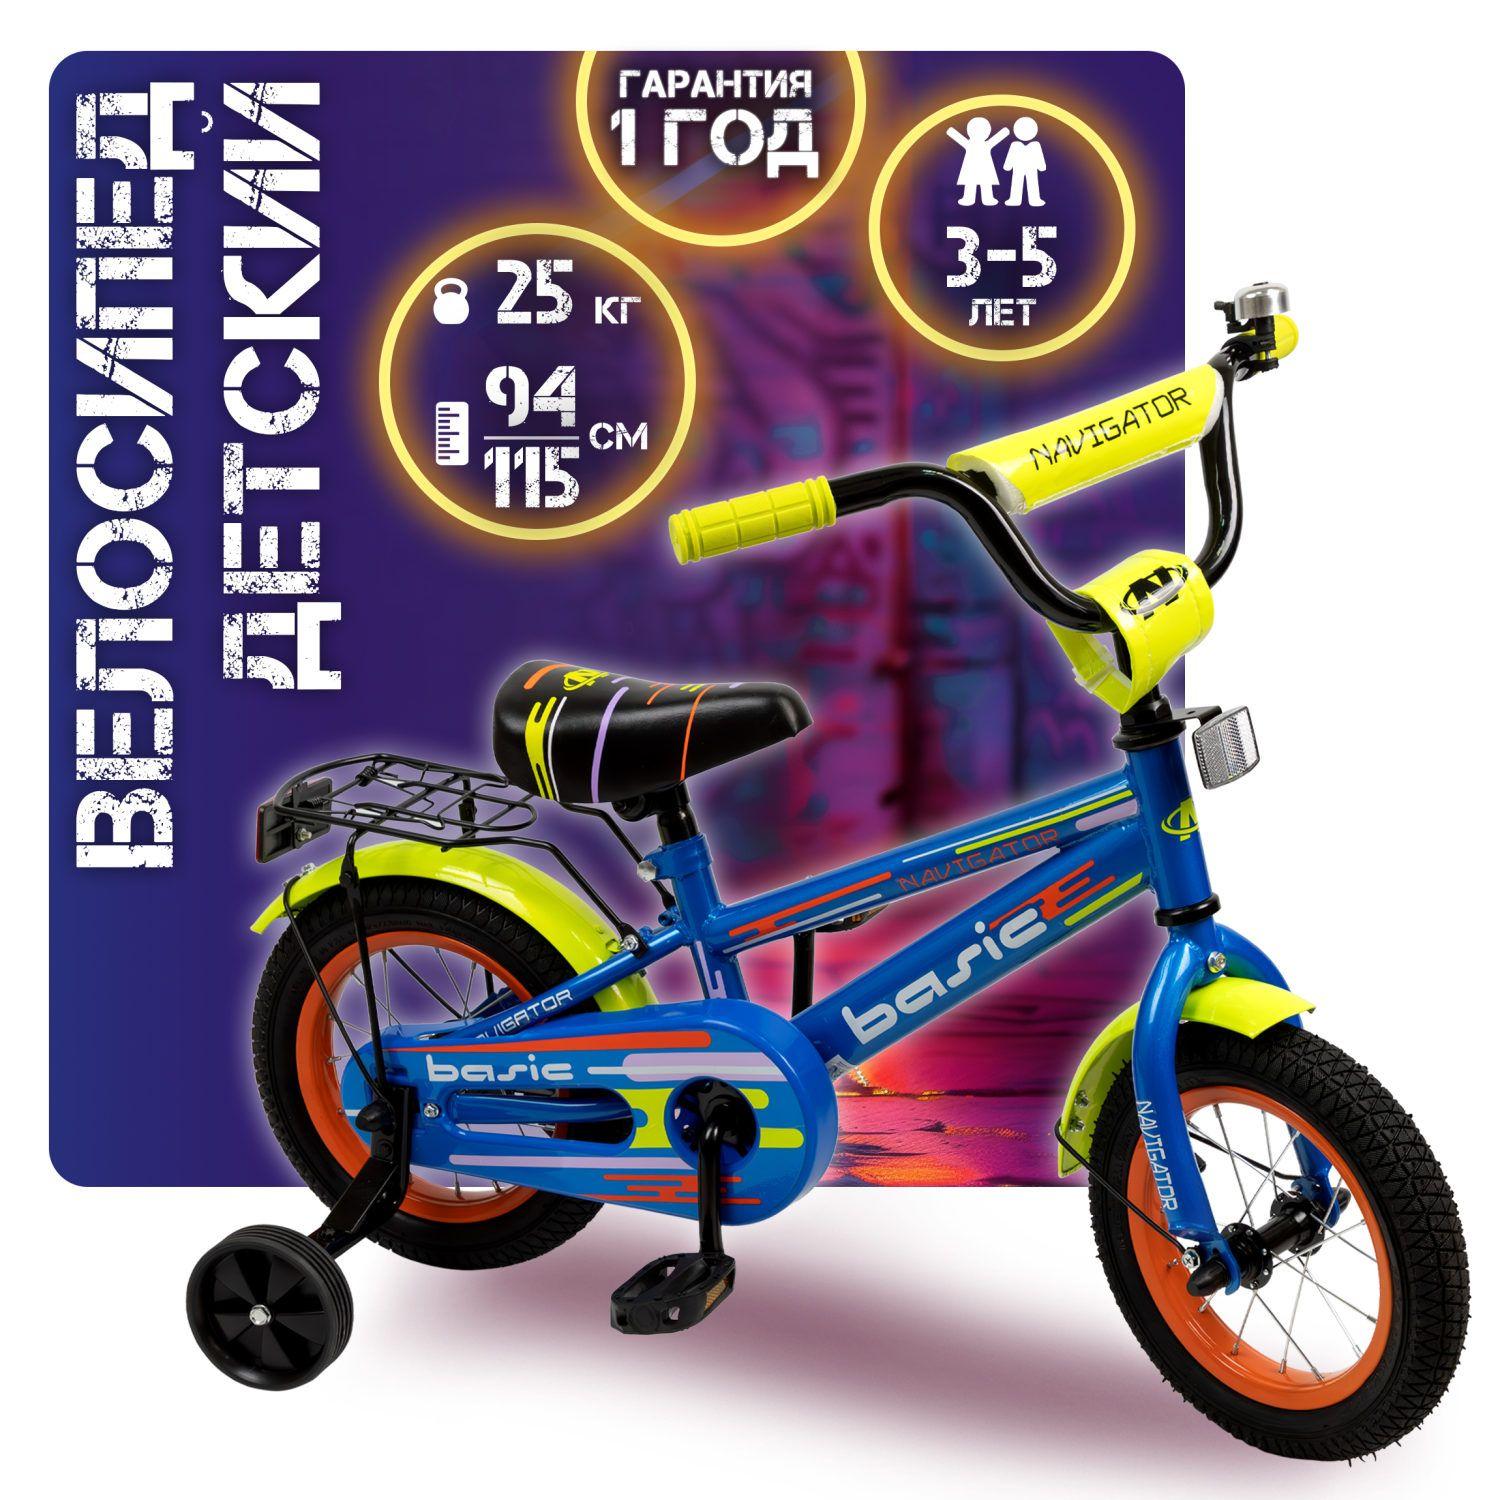 Navigator | Велосипед детский Navigator BASIC 12 дюймов, четырехколесный, двухколесный, городской, для девочек, для мальчика